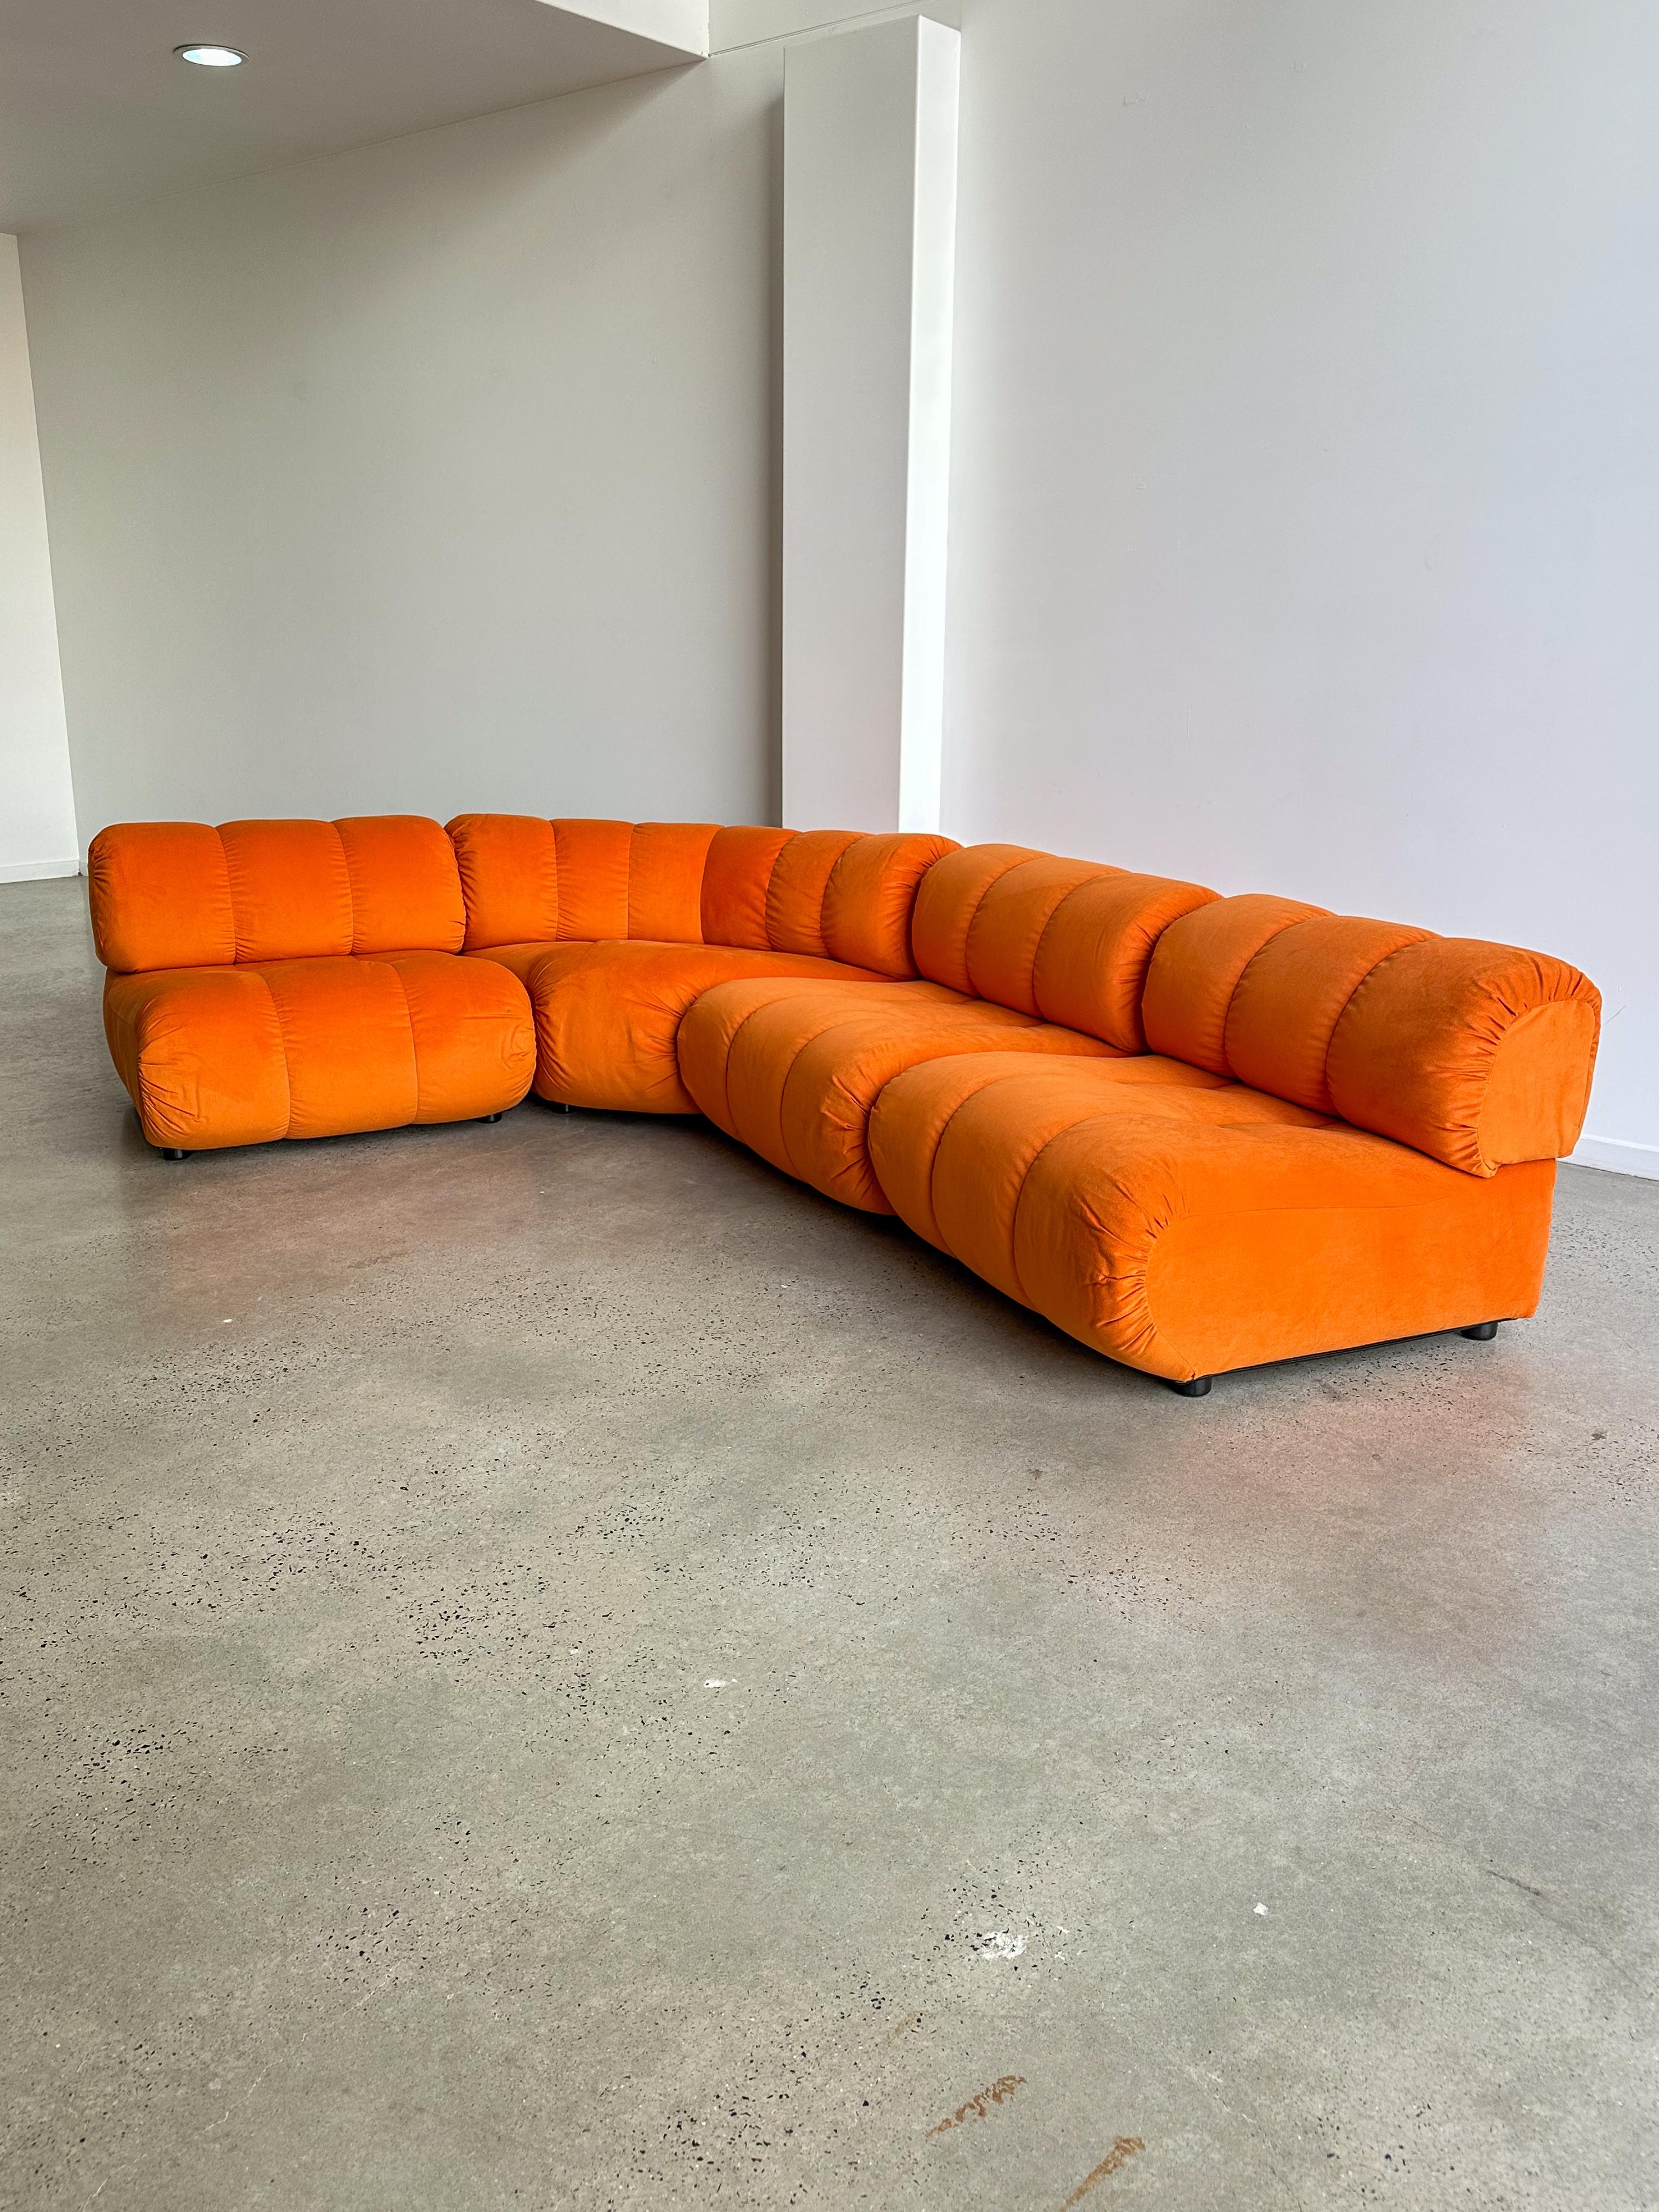 Fin du 20e siècle Giuseppe Munari pour Poltronova - Ensemble de quatre canapés orange modulaires des années 1970 en vente